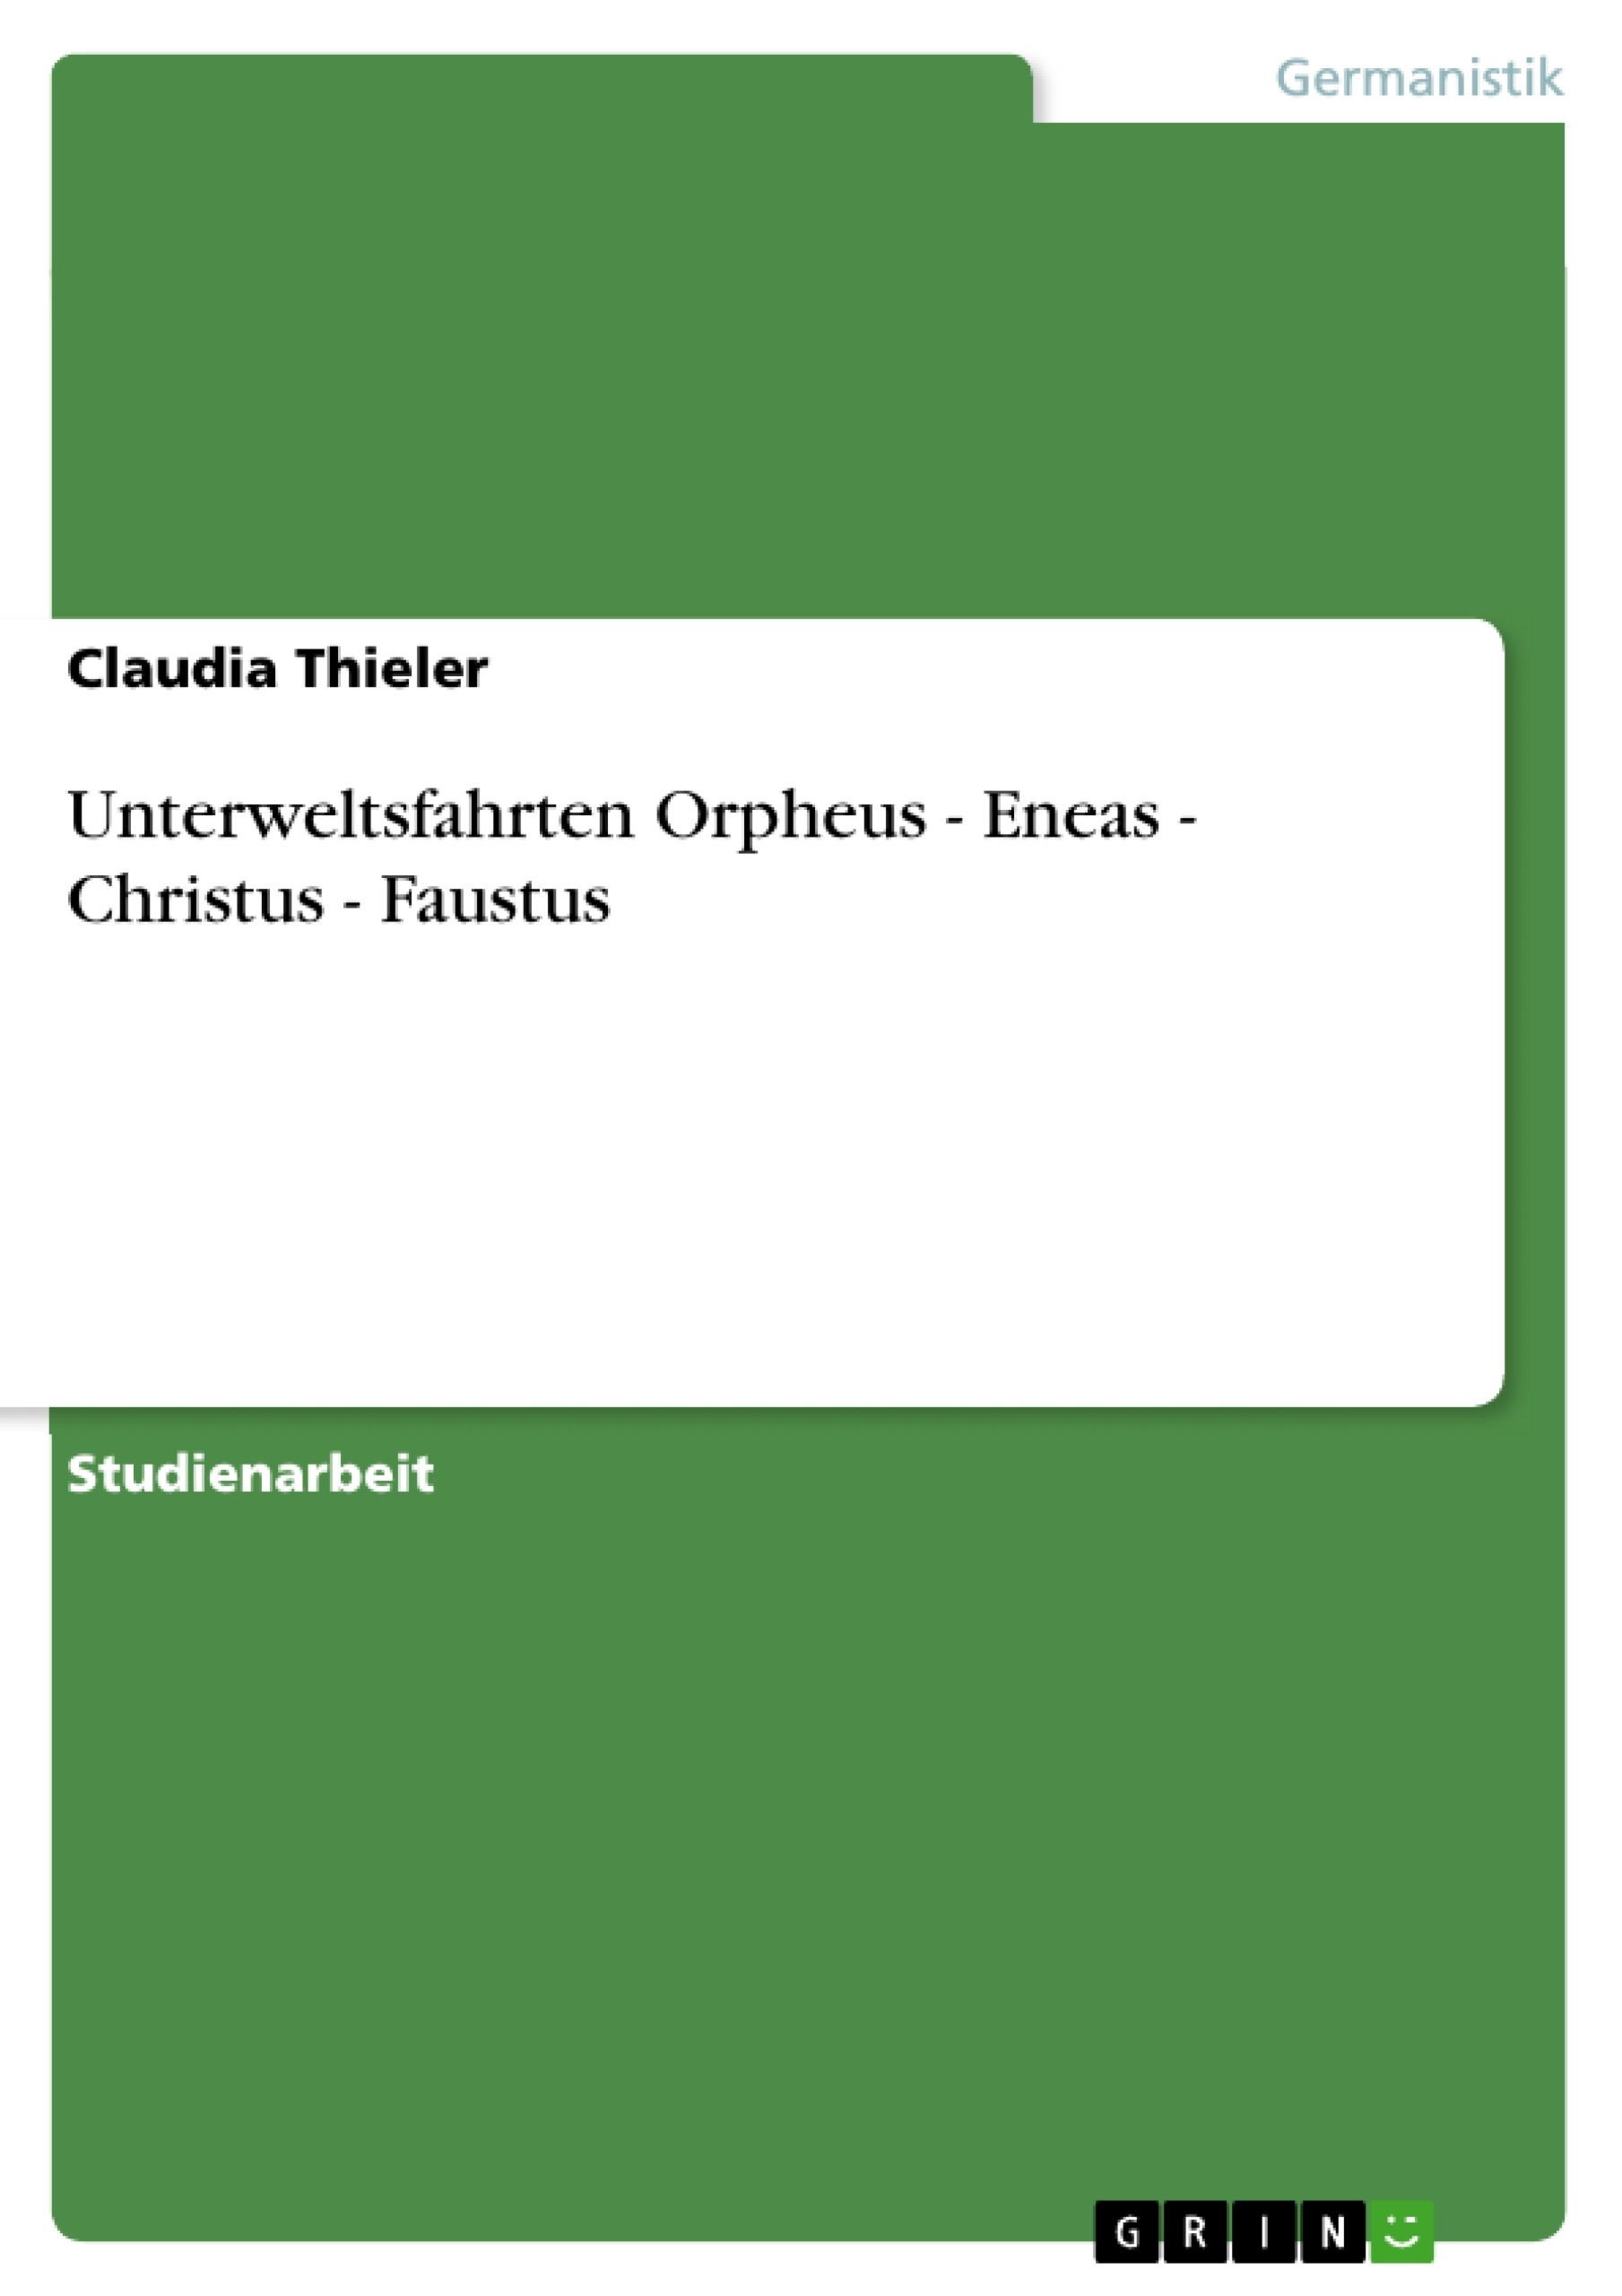 Título: Unterweltsfahrten Orpheus - Eneas - Christus - Faustus